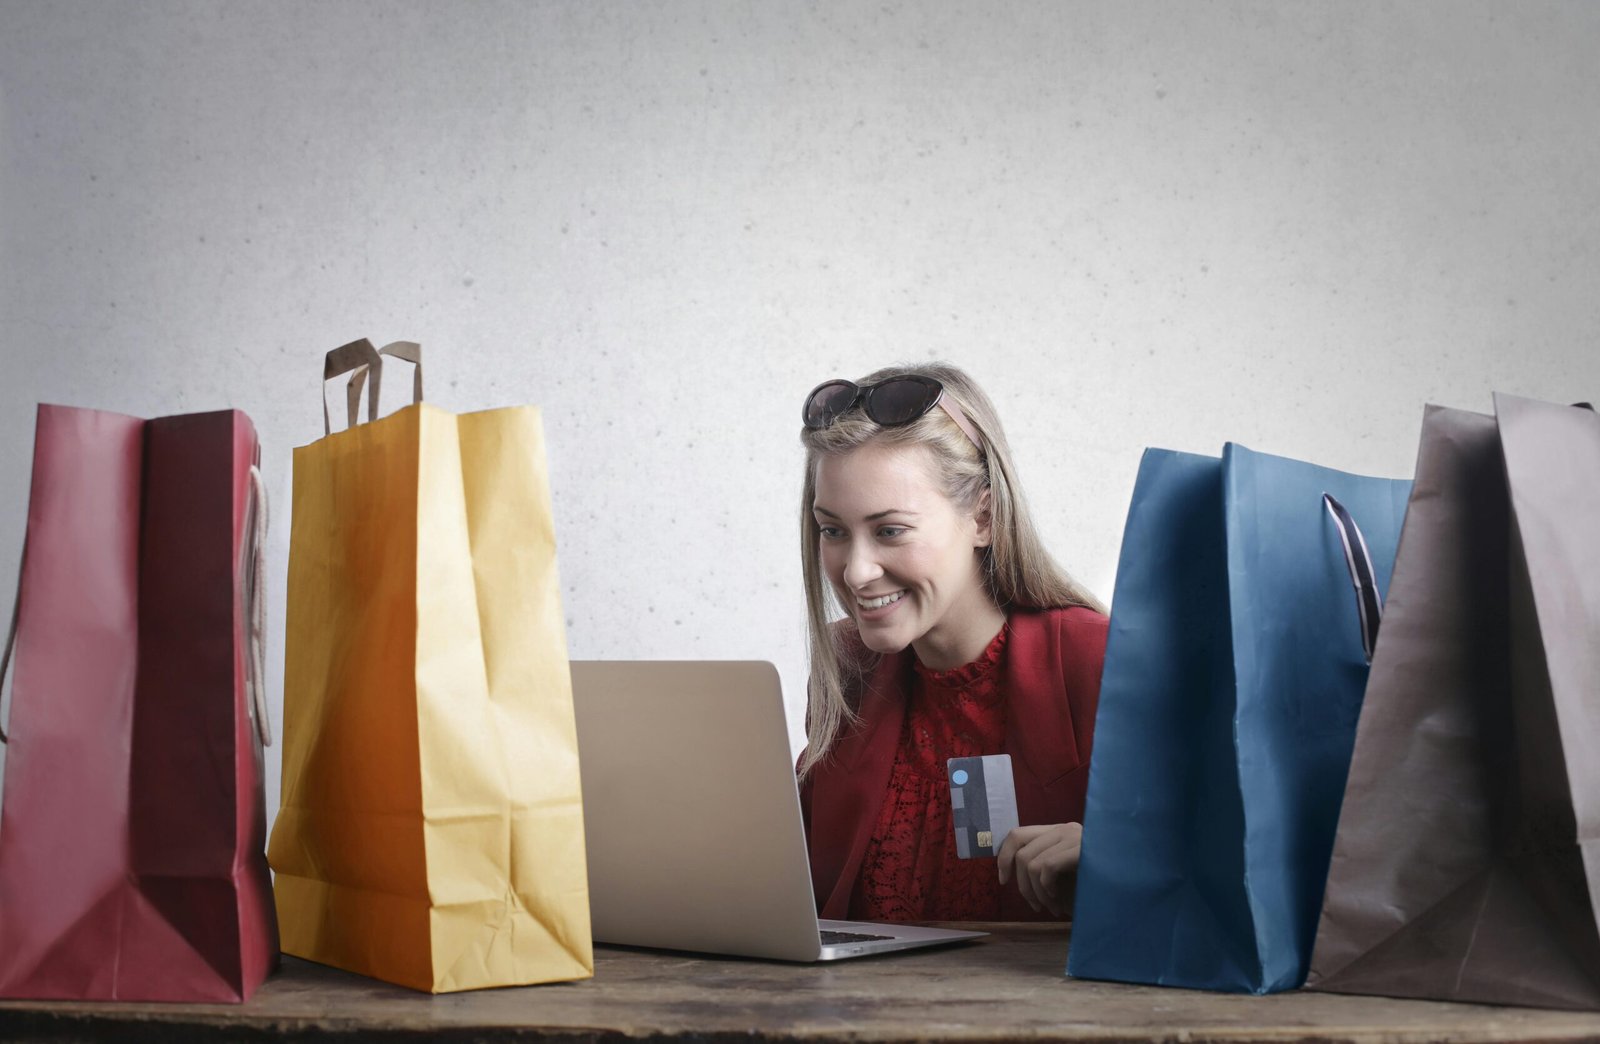 O que é E-commerce?